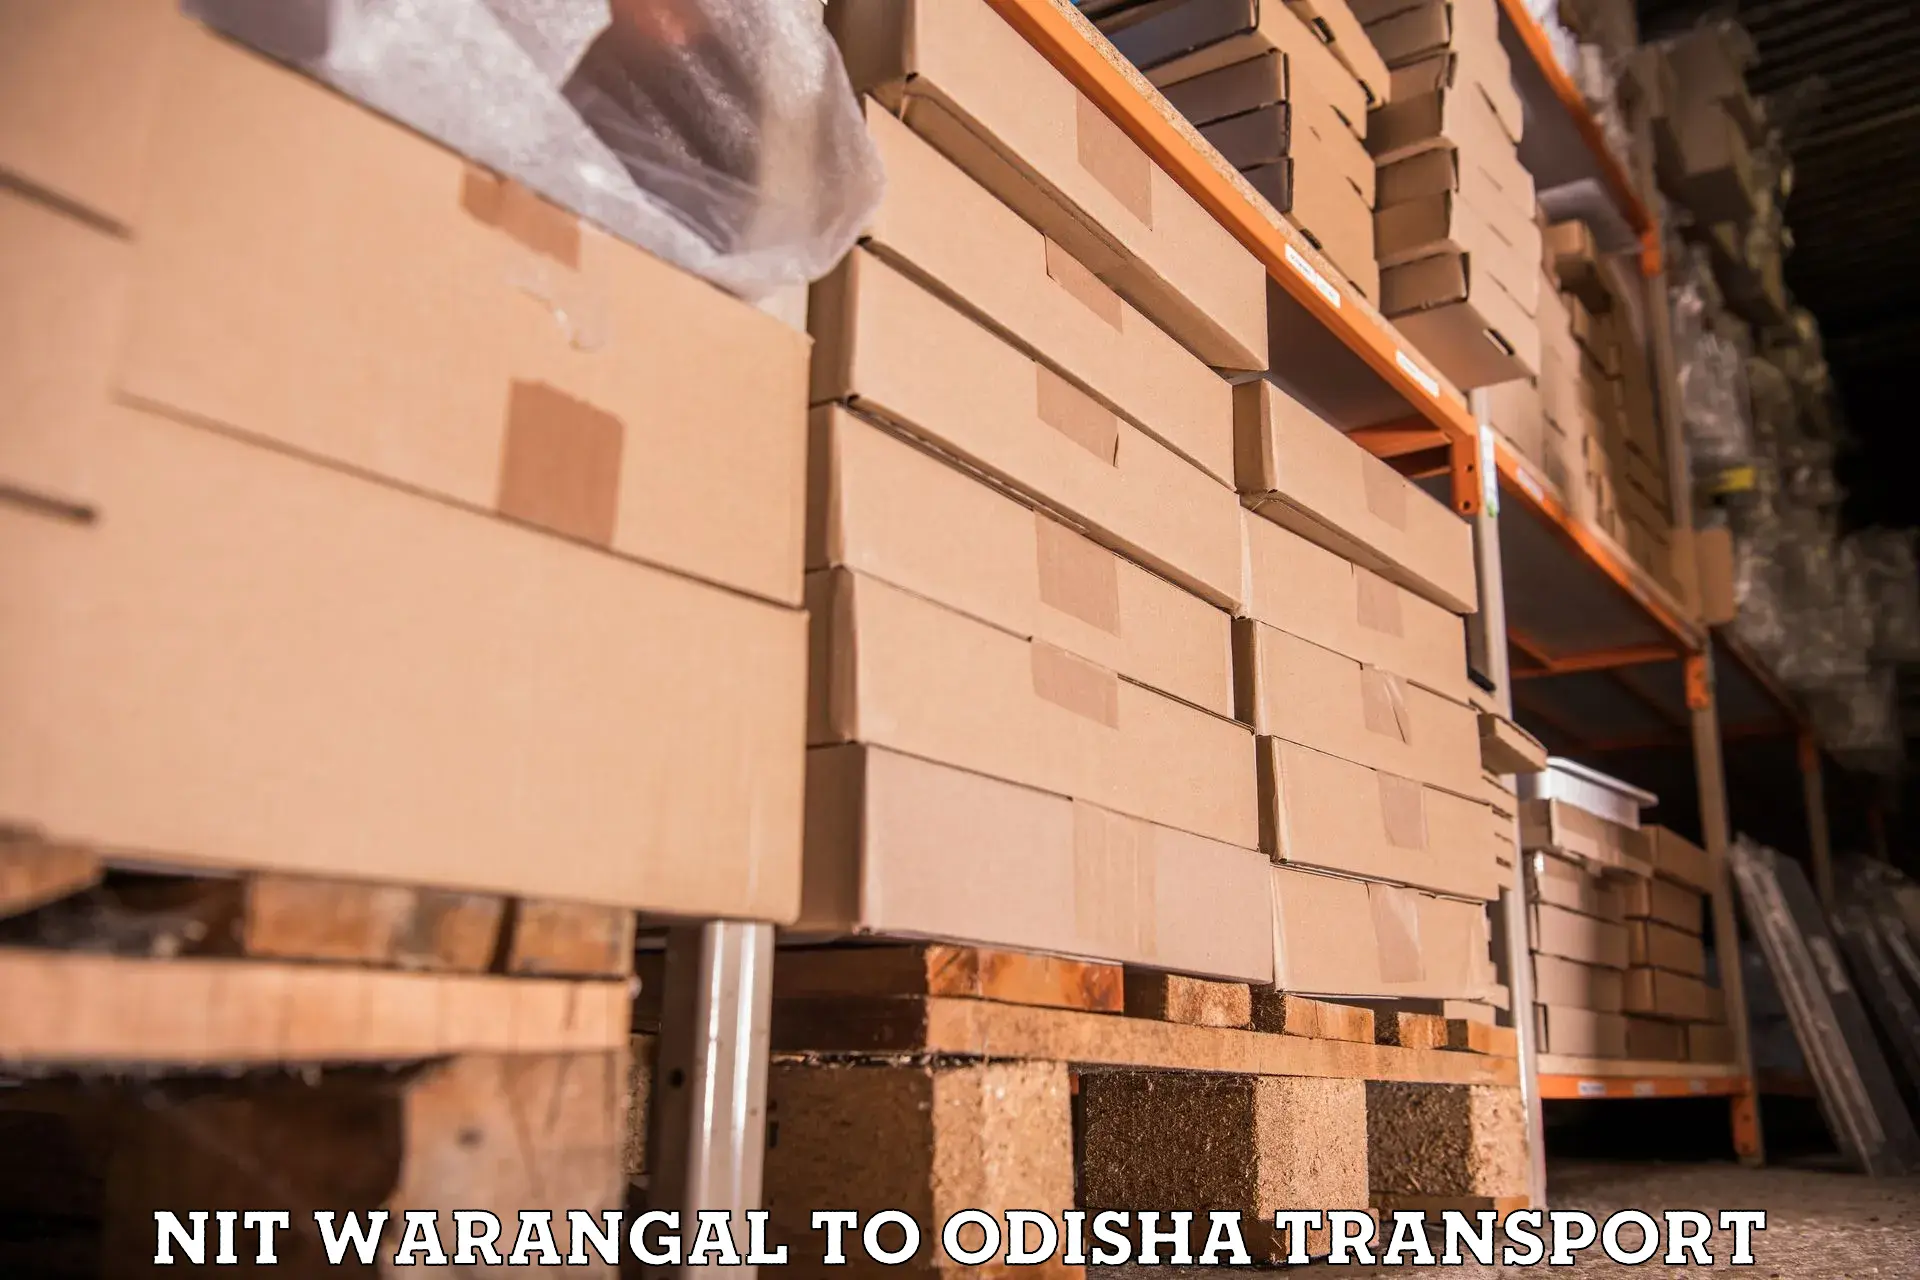 Furniture transport service NIT Warangal to Sukinda